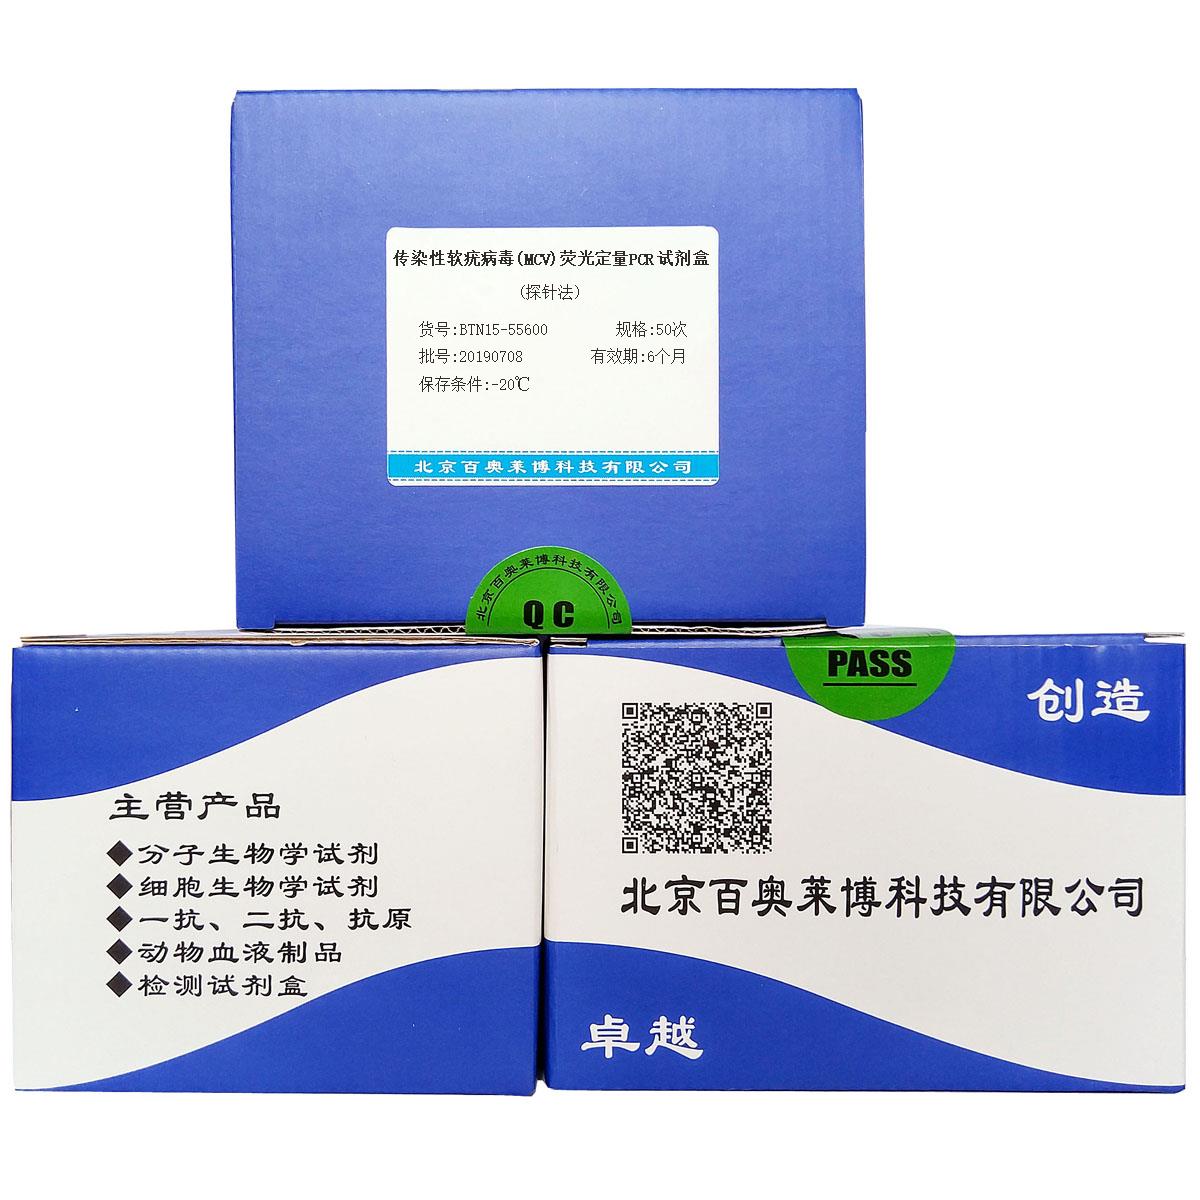 传染性软疣病毒(MCV)荧光定量PCR试剂盒(探针法)